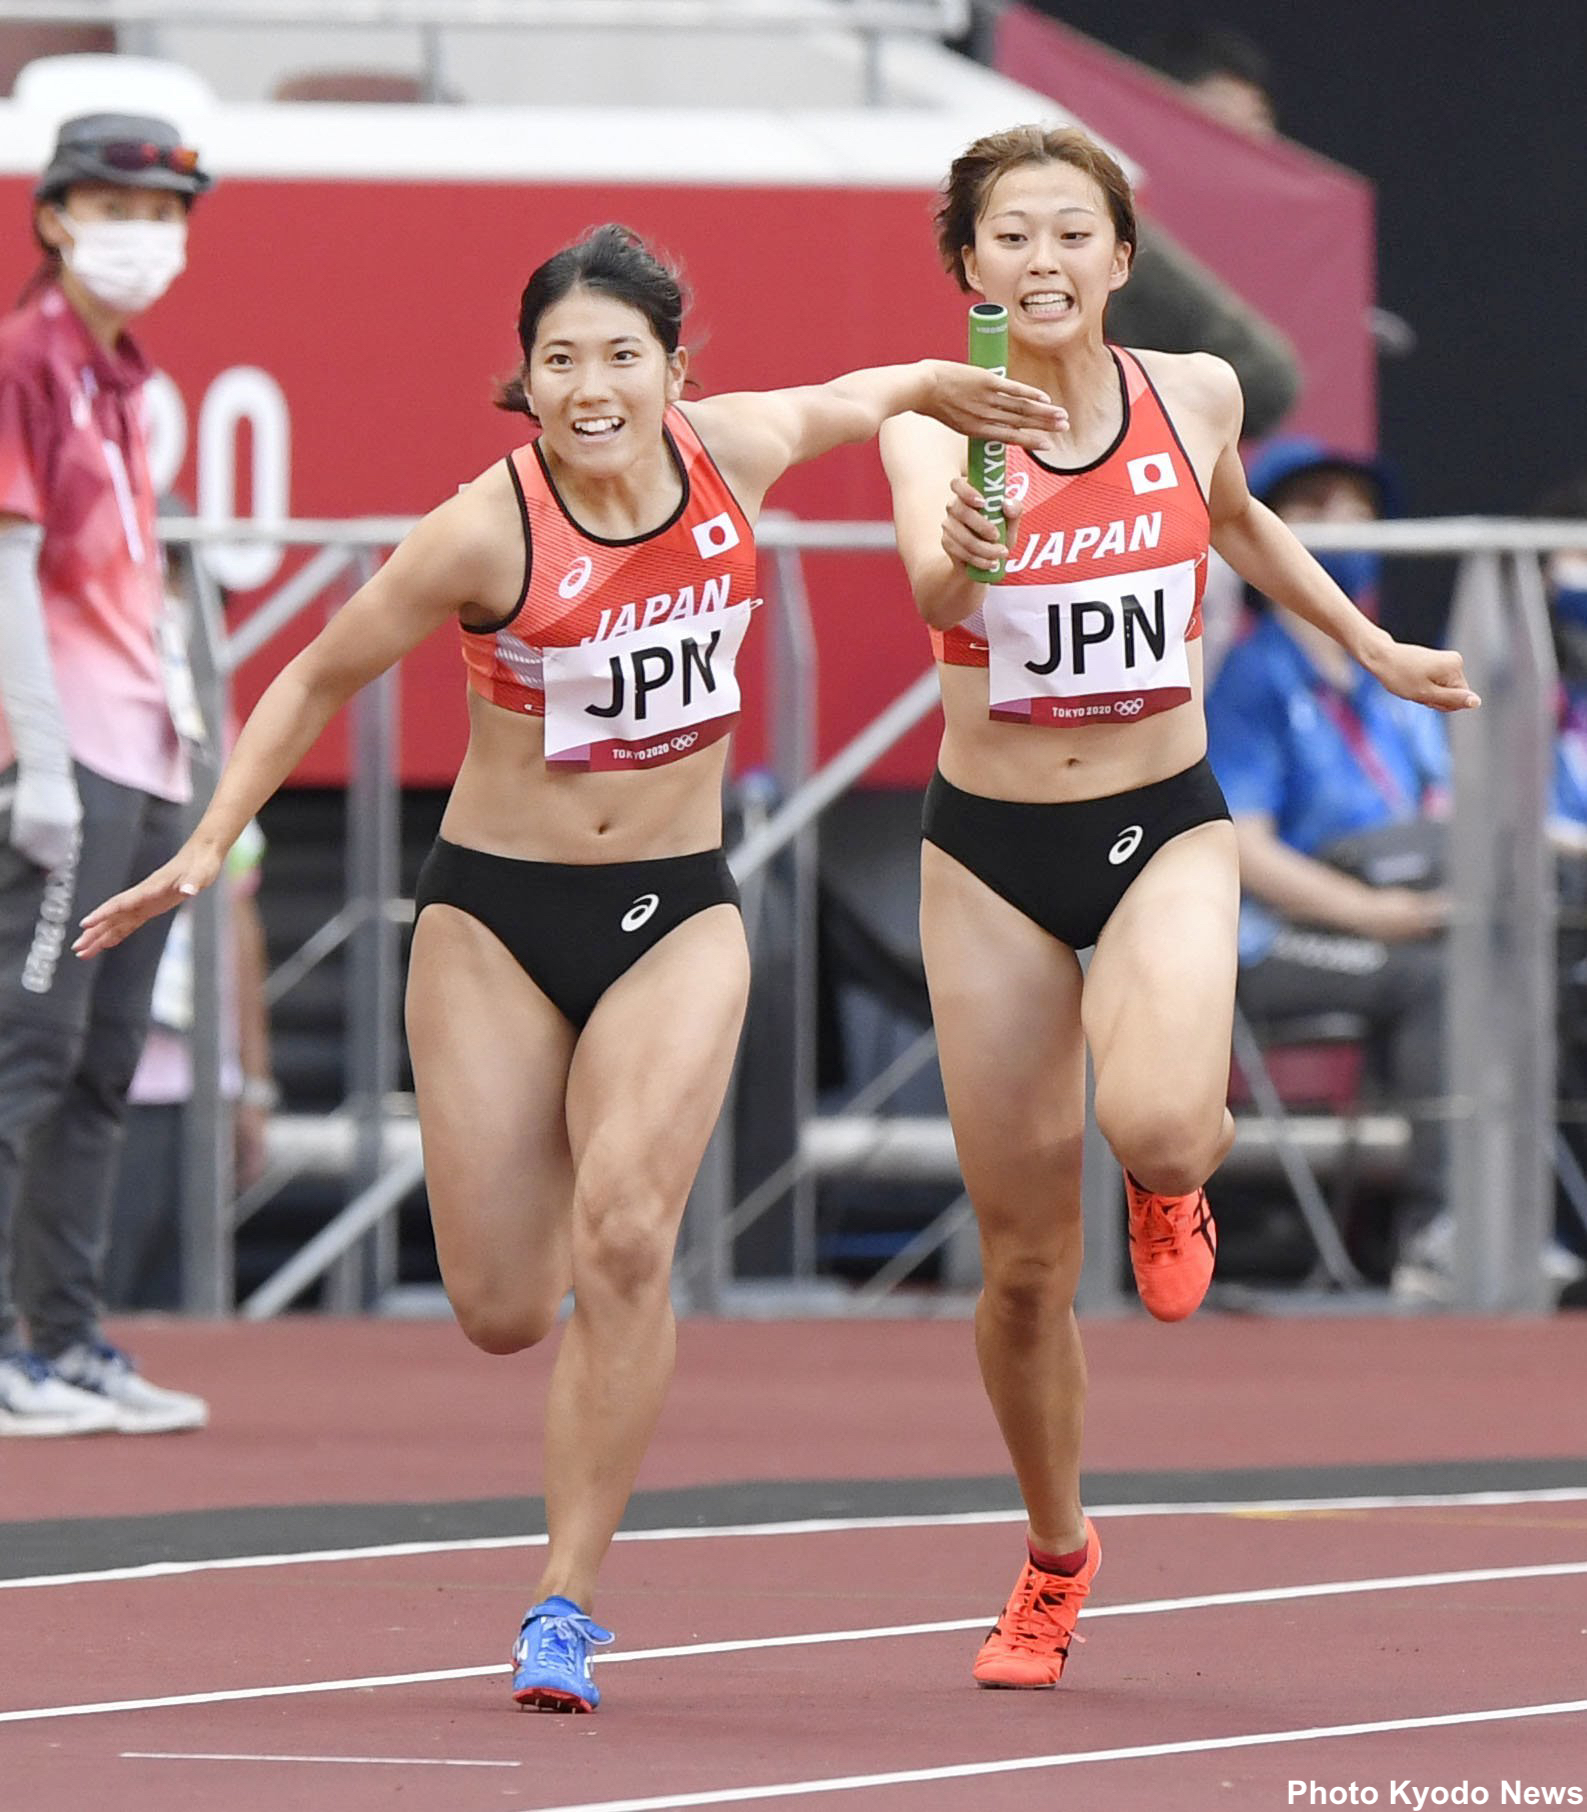 Team Japan Ar Twitter 陸上競技 女子4 100mリレー 予選敗退 43秒44とシーズンベストを記録するも 1組7着で決勝進出ならず がんばれニッポン Tokyo Teamjapan オリンピック T Co X0o7rrq7v8 Twitter